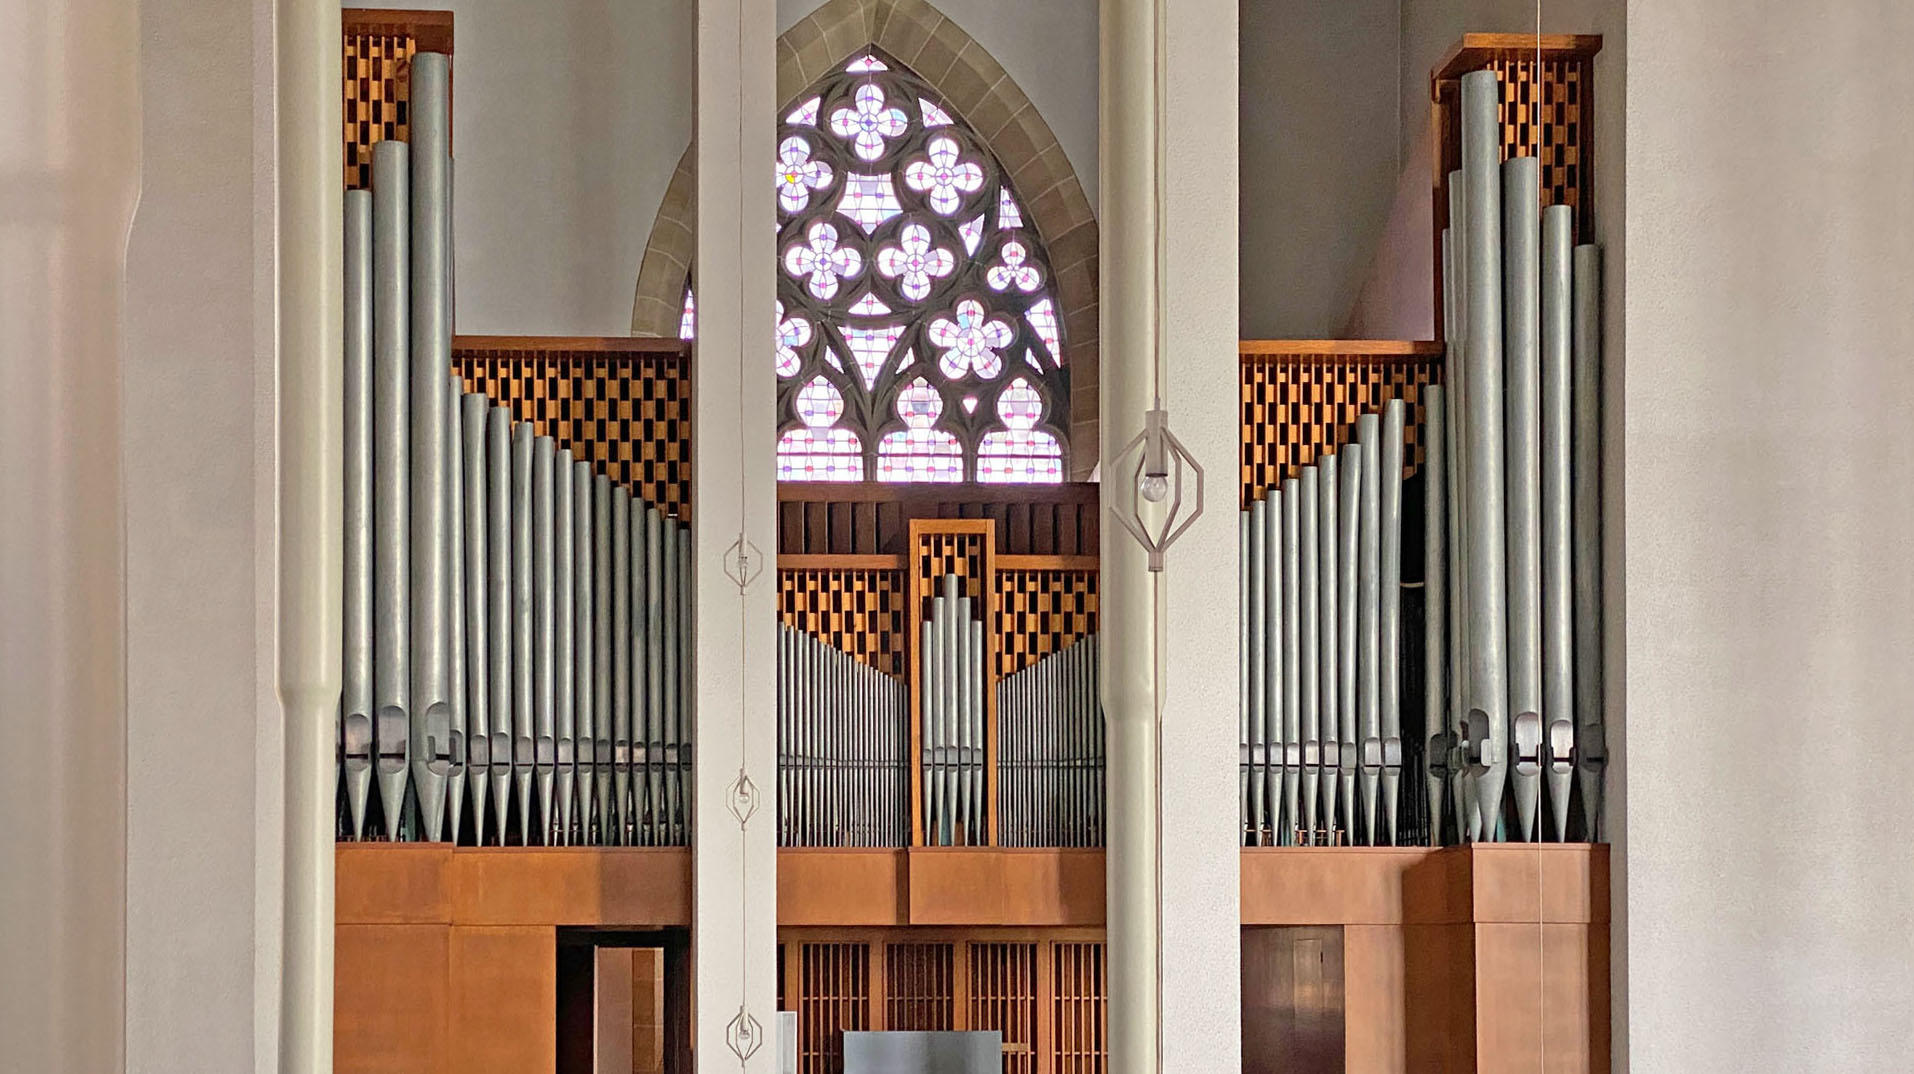 Die große Orgel in St. Engelbert